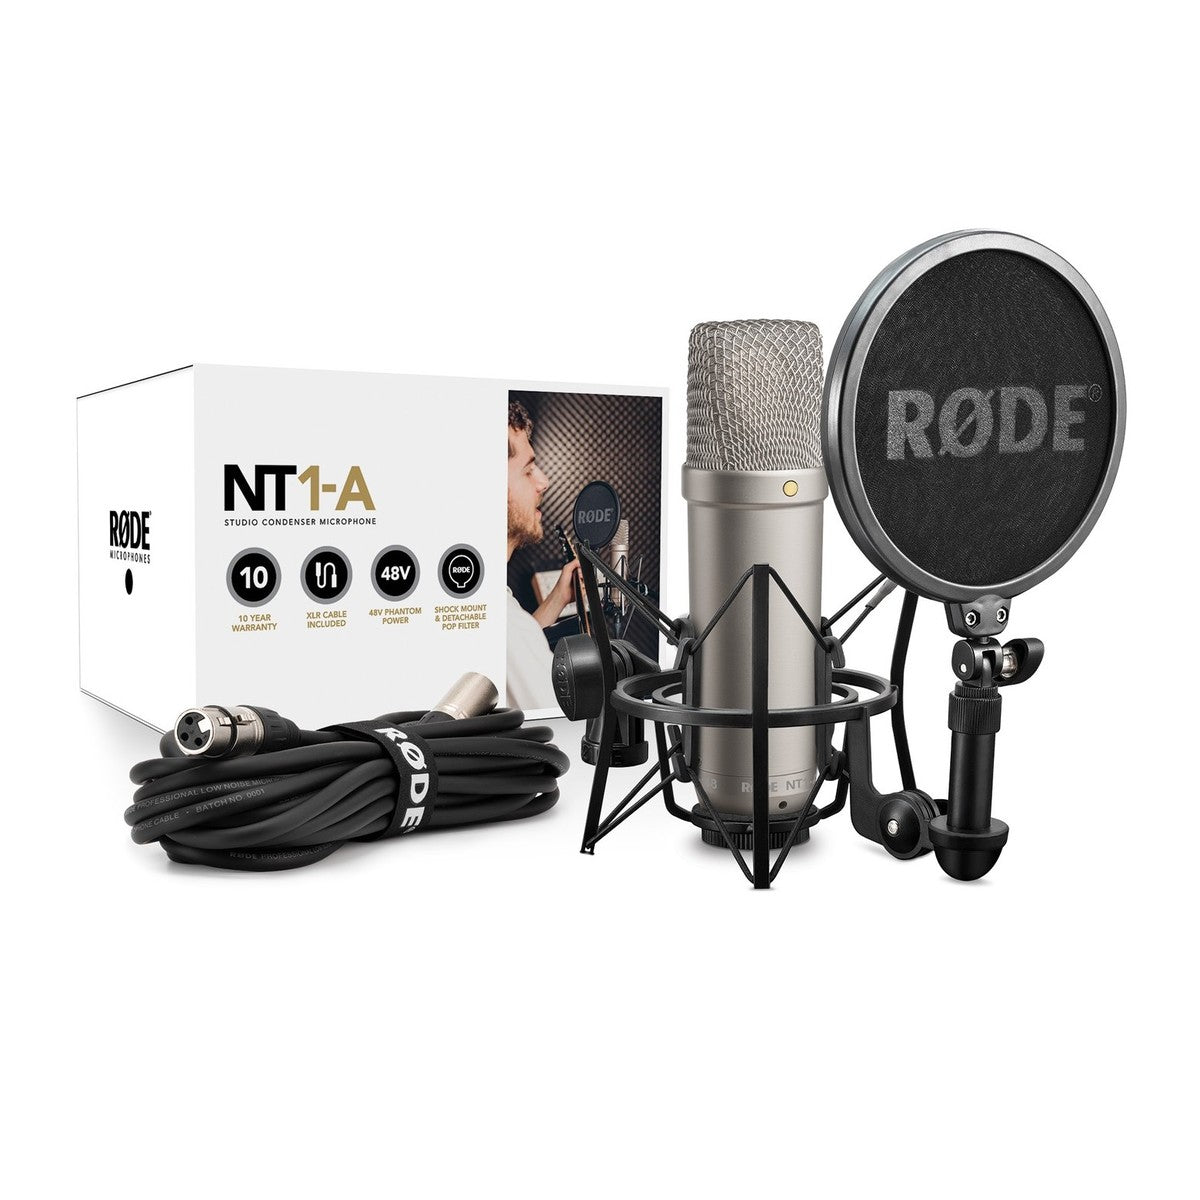 Rode NT1-A – Spectrum Tec